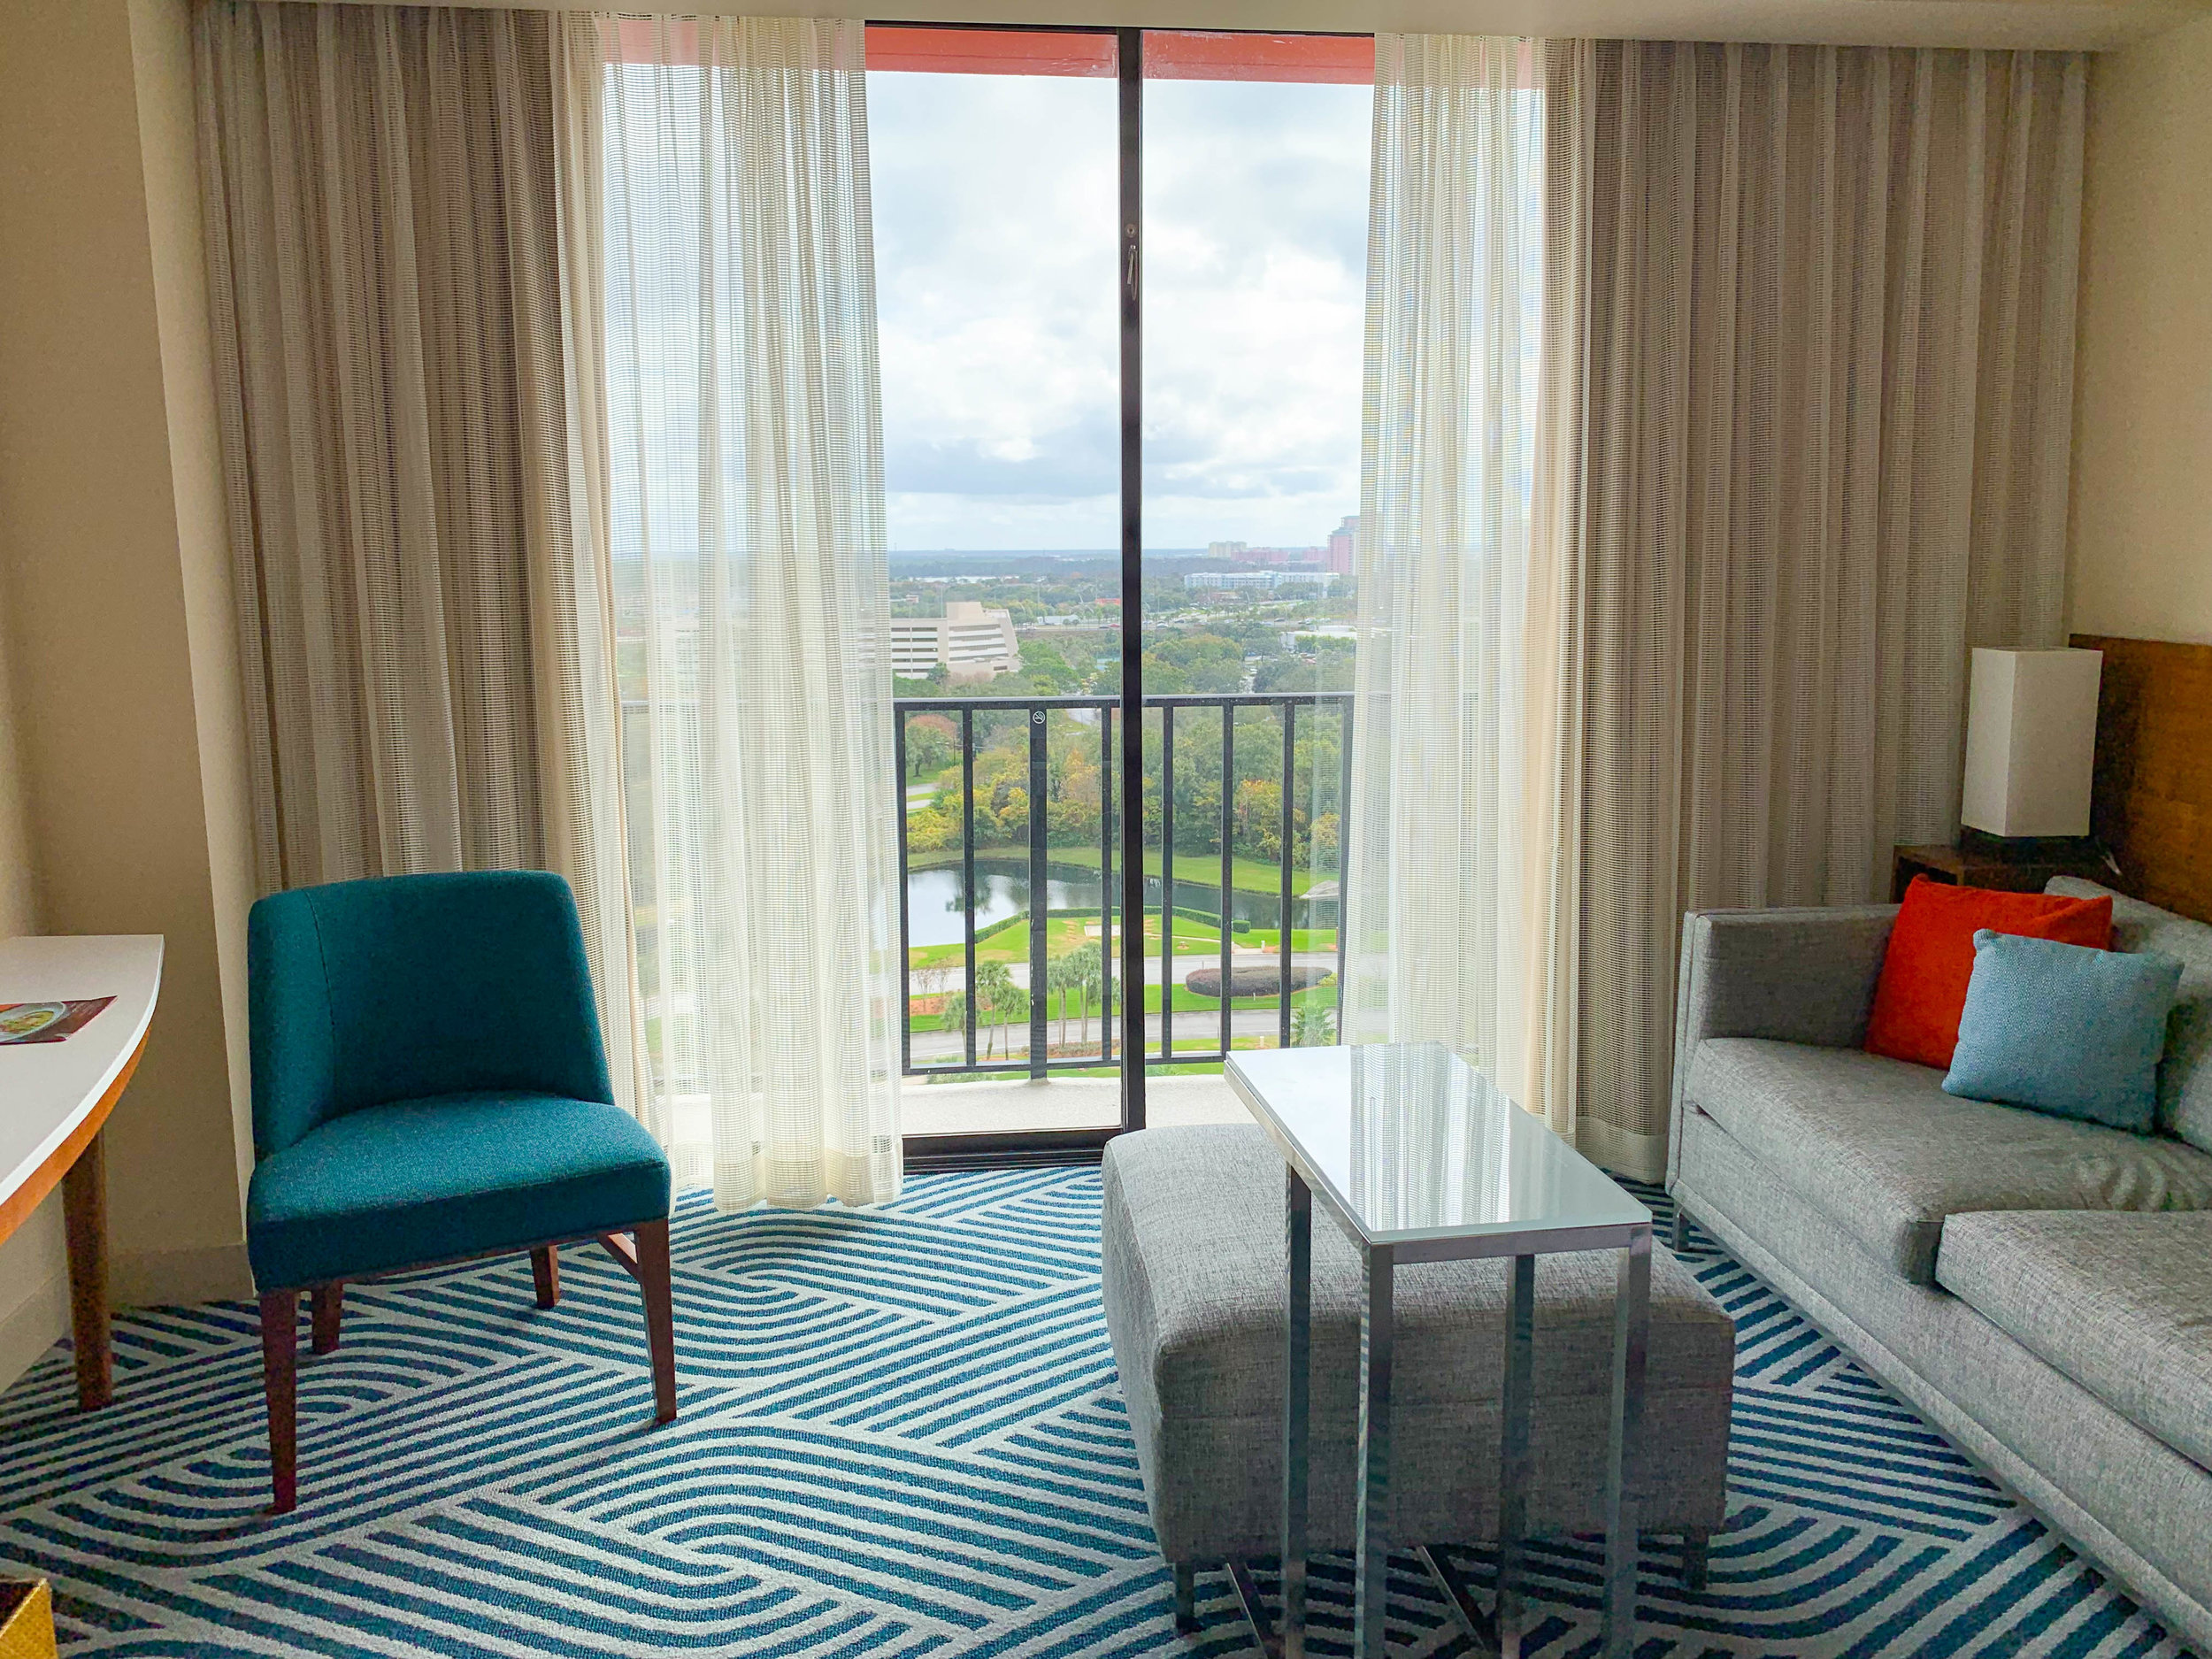 Rooms at the Hyatt Regency Grand Cypress Orlando